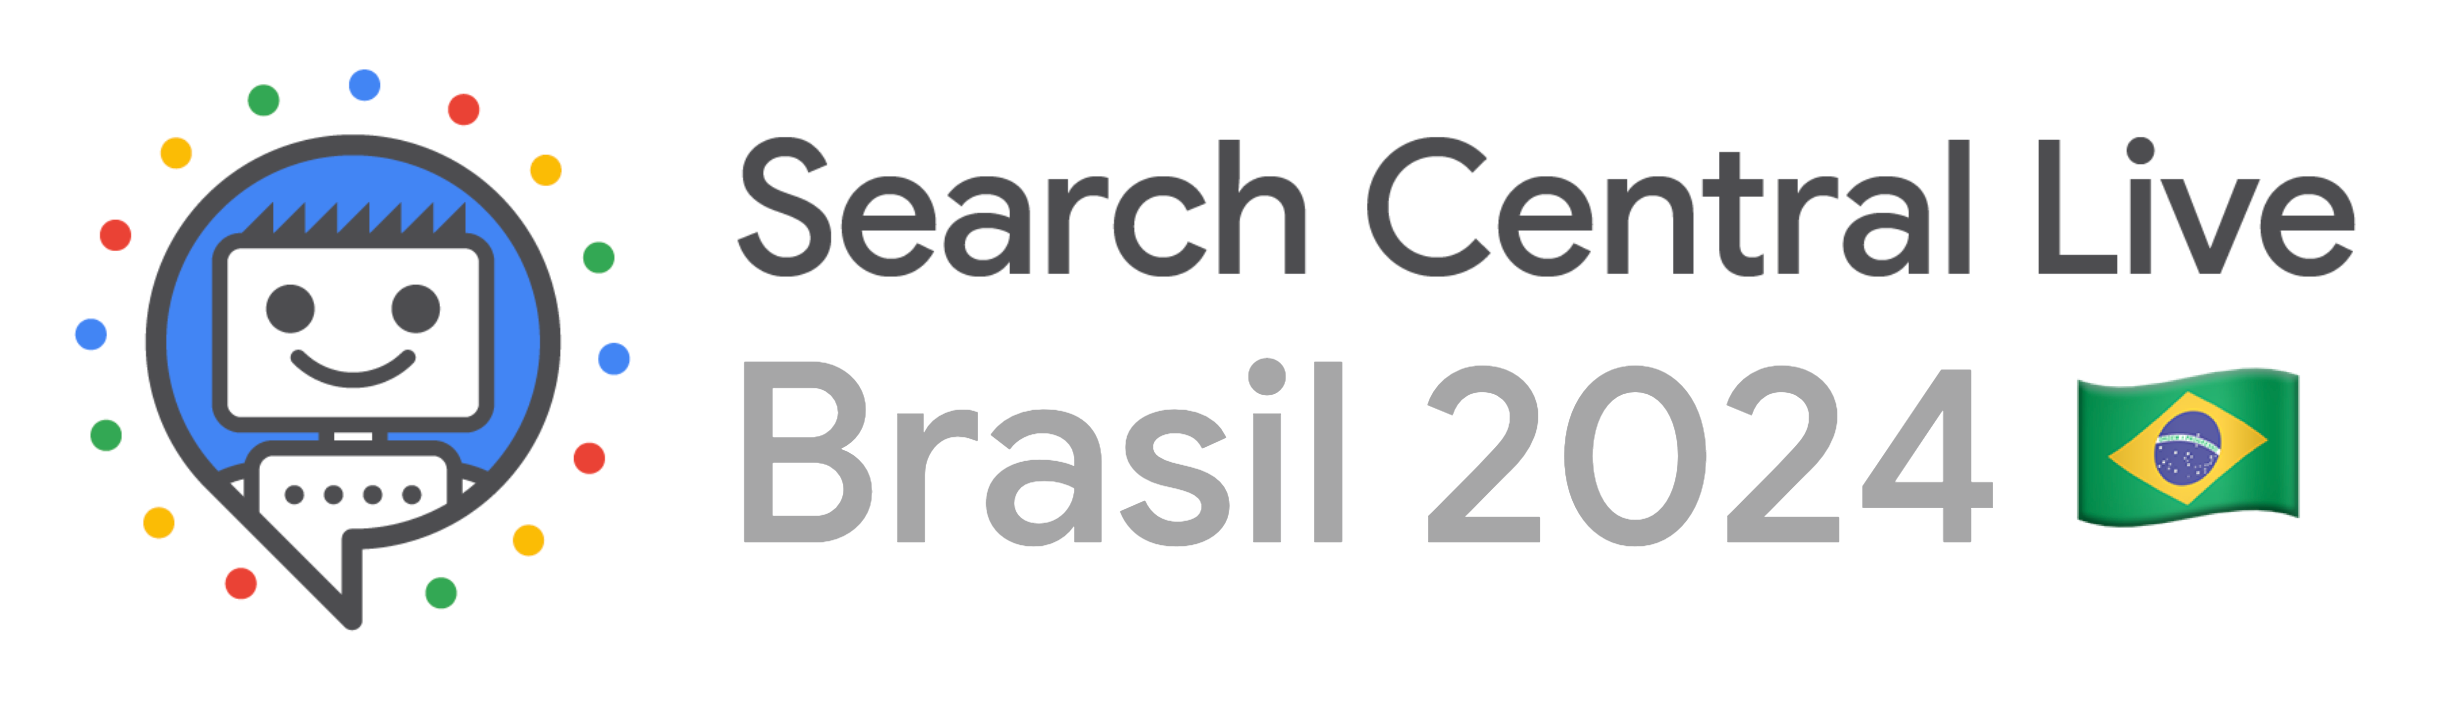 Search Central Live Sao Paulo logo